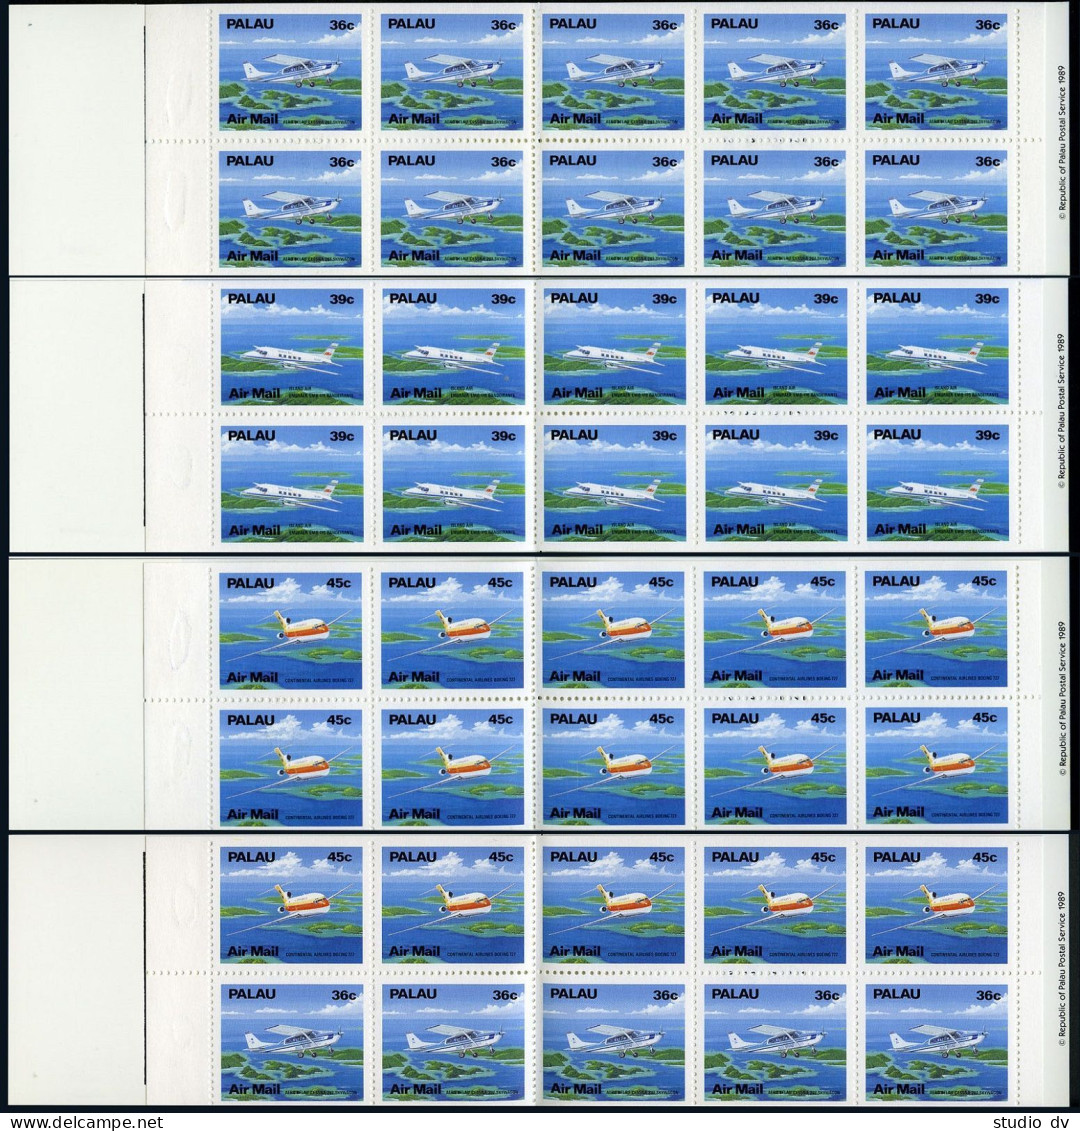 Palau C18a,C19a,C20a,C20b Booklets,MNH.Michel 278-280A MH. Aircraft 1989. - Palau